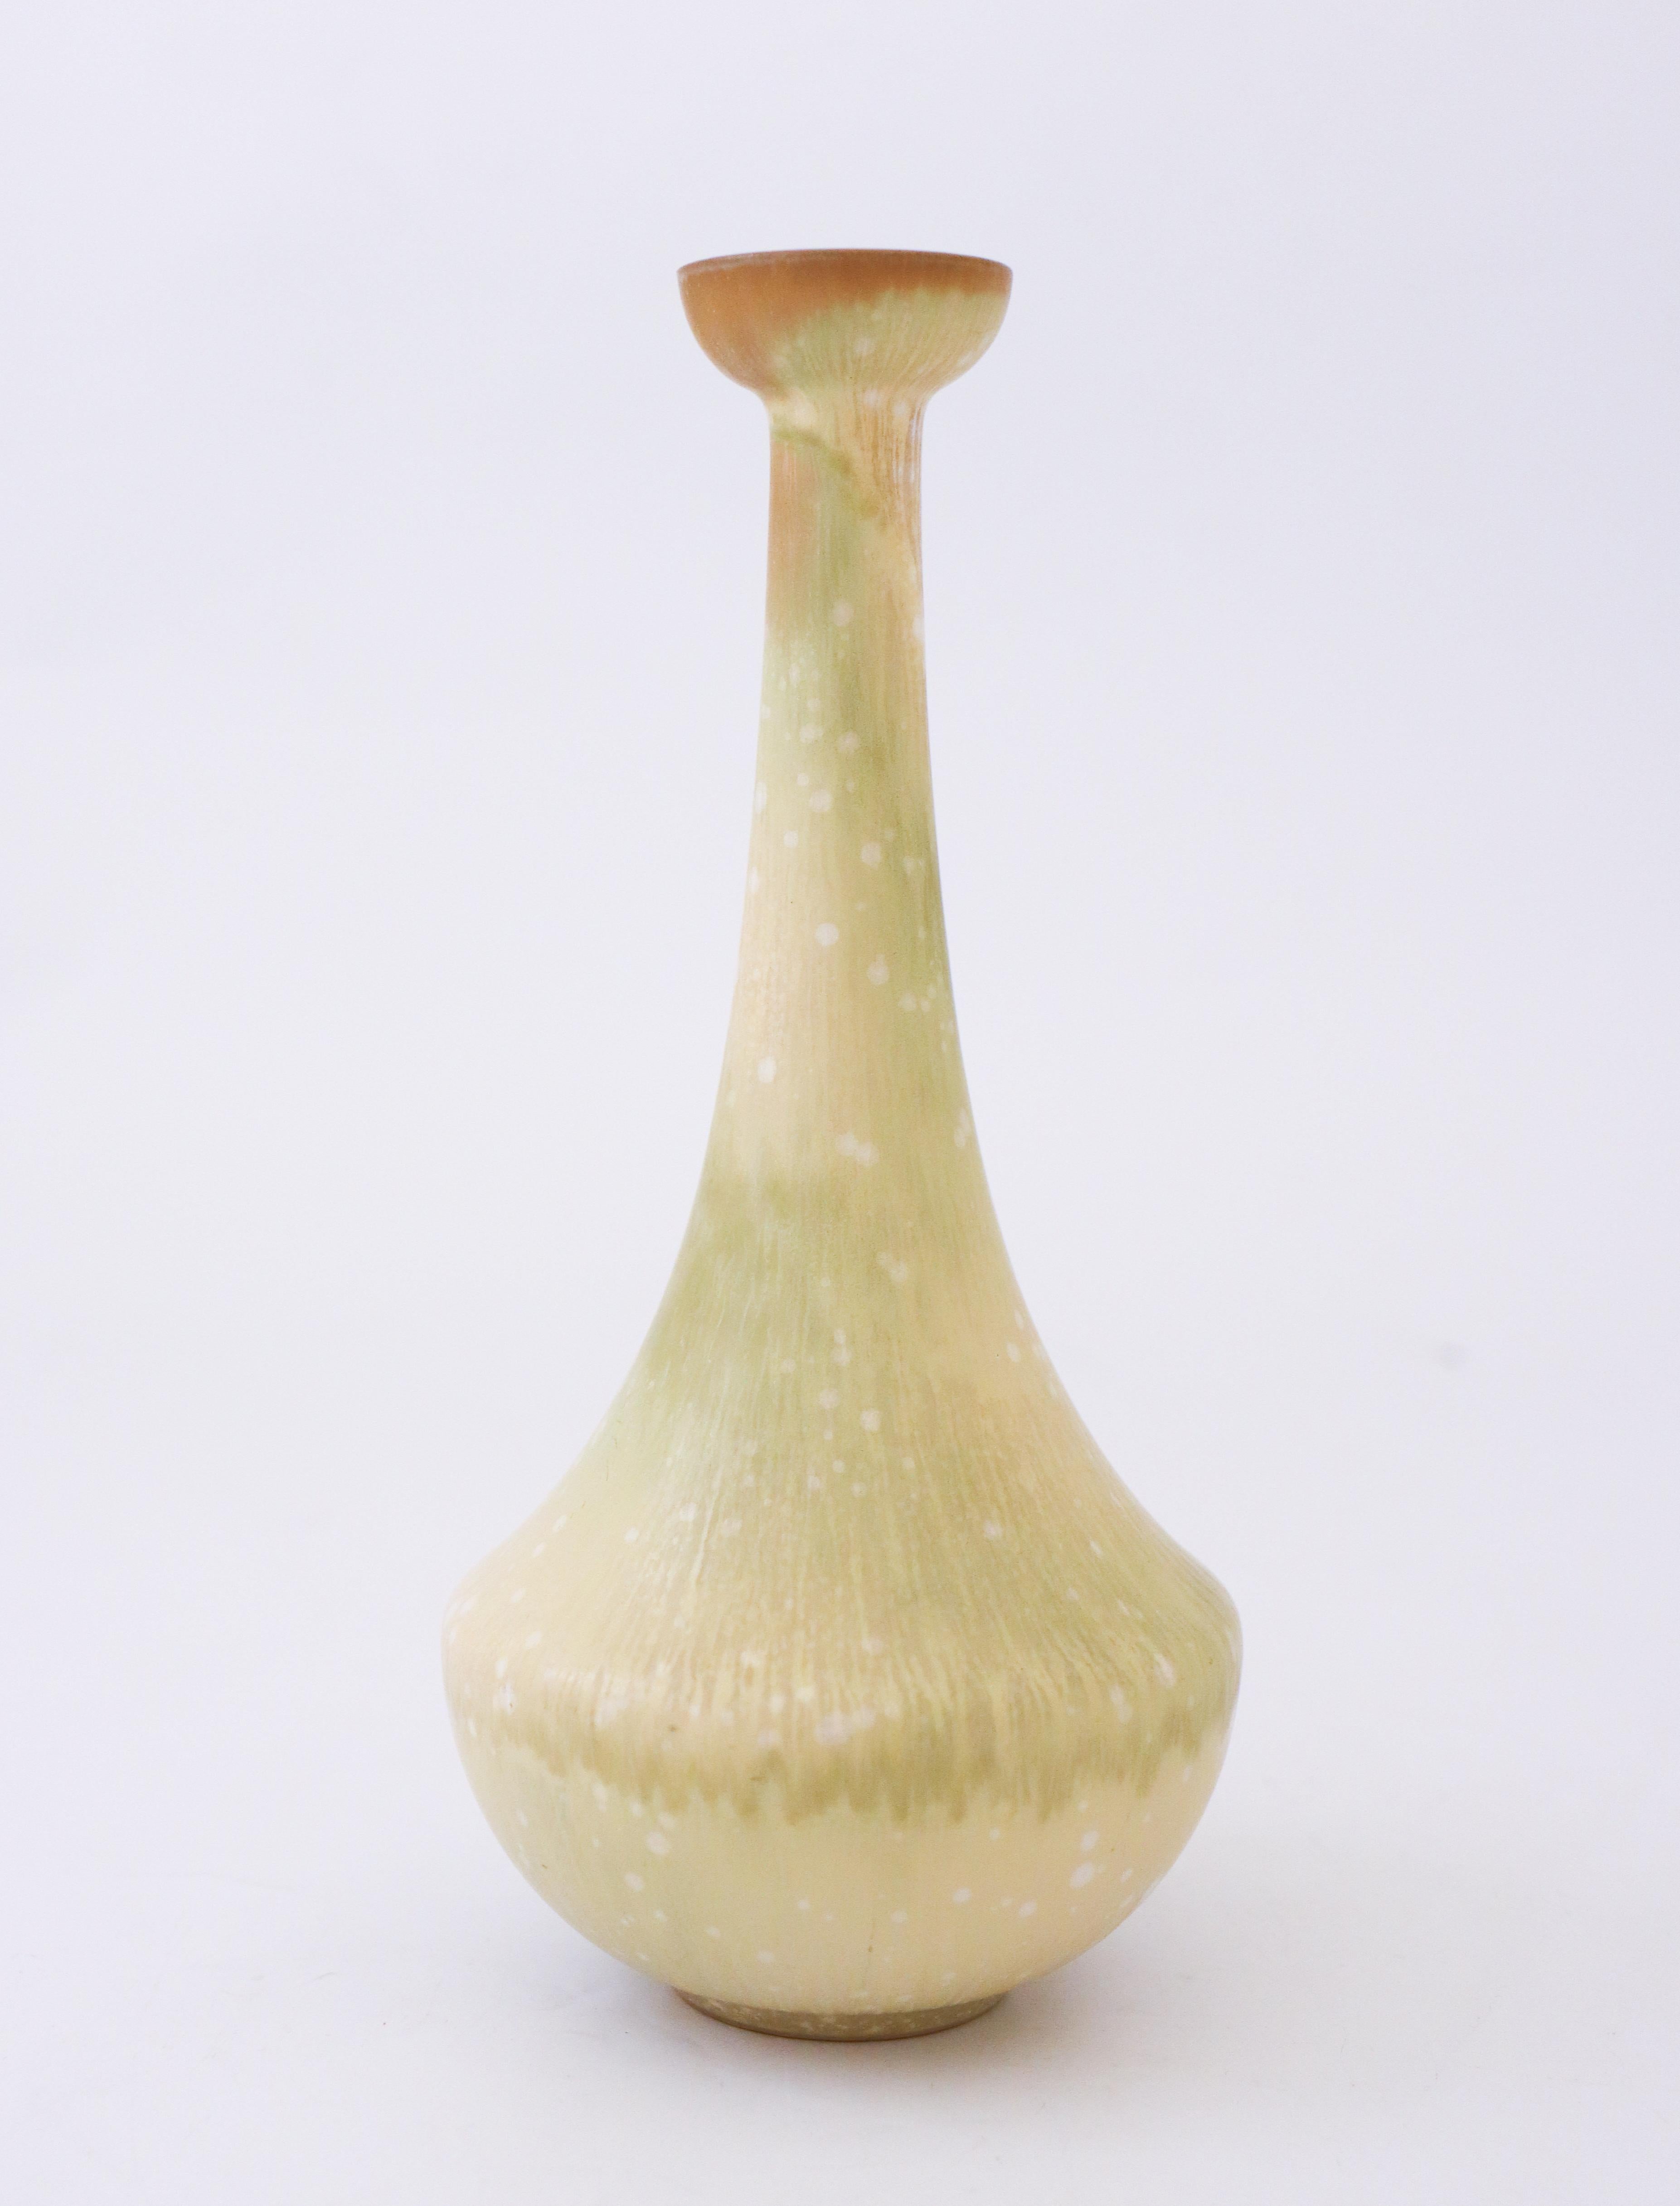 Un joli vase de couleur vert/jaune conçu par Gunnar Nylund chez Rörstrand. Il mesure 19 cm de haut et est en parfait état. Le vase est marqué comme étant de 1ère qualité. 

 